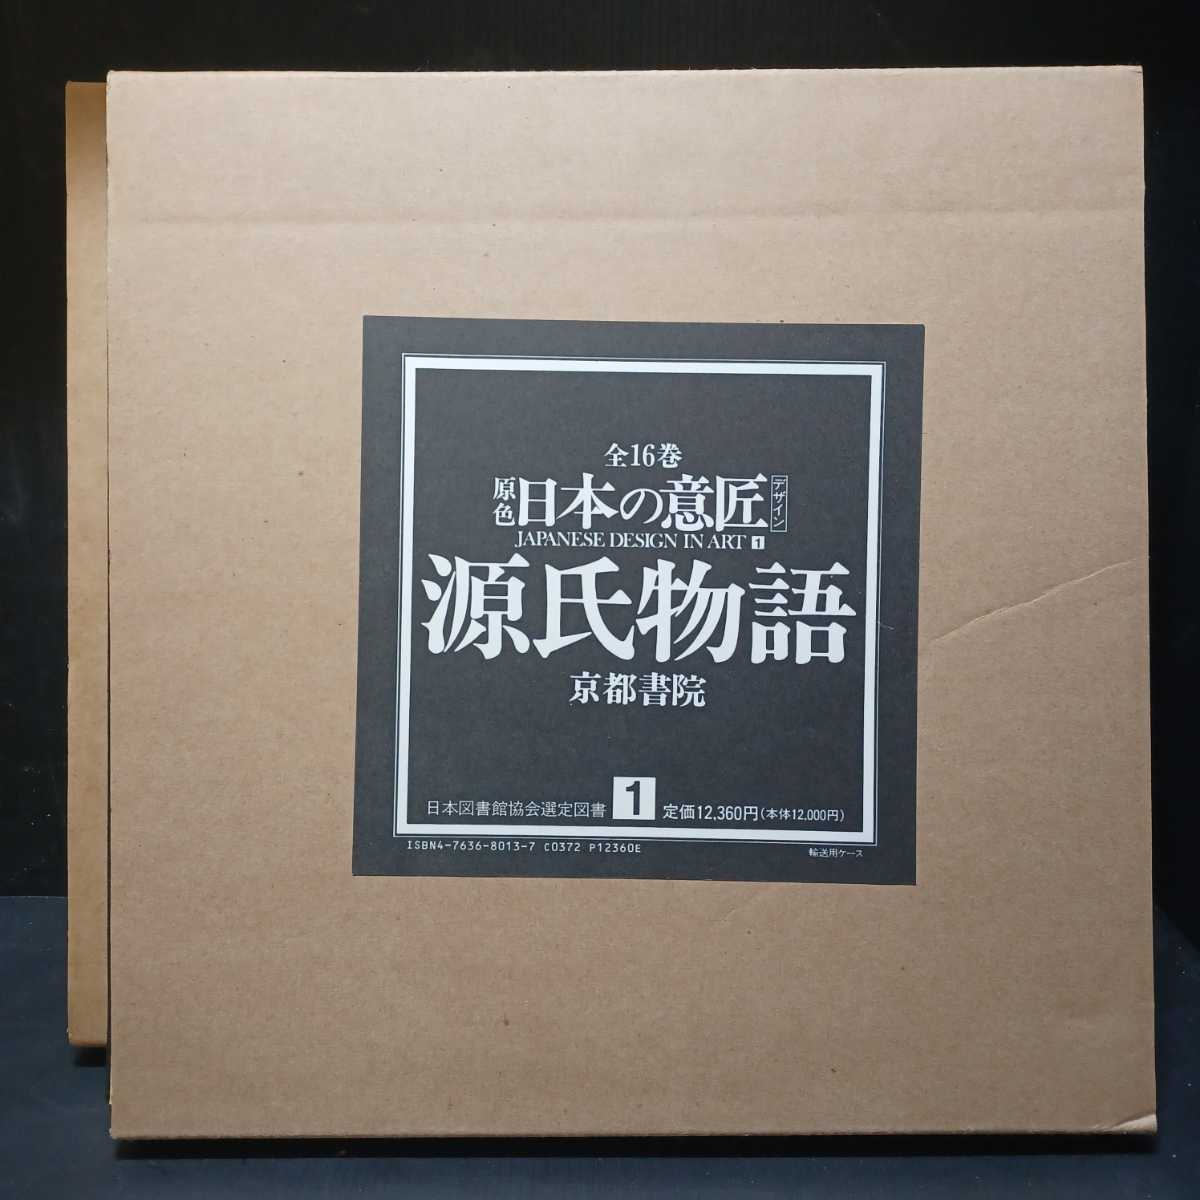 代引き手数料無料 「原色 日本の意匠 デザイン 全16巻」 京都書院 JAPANESE DESIGN IN ART　文様　源氏物語 デザイン